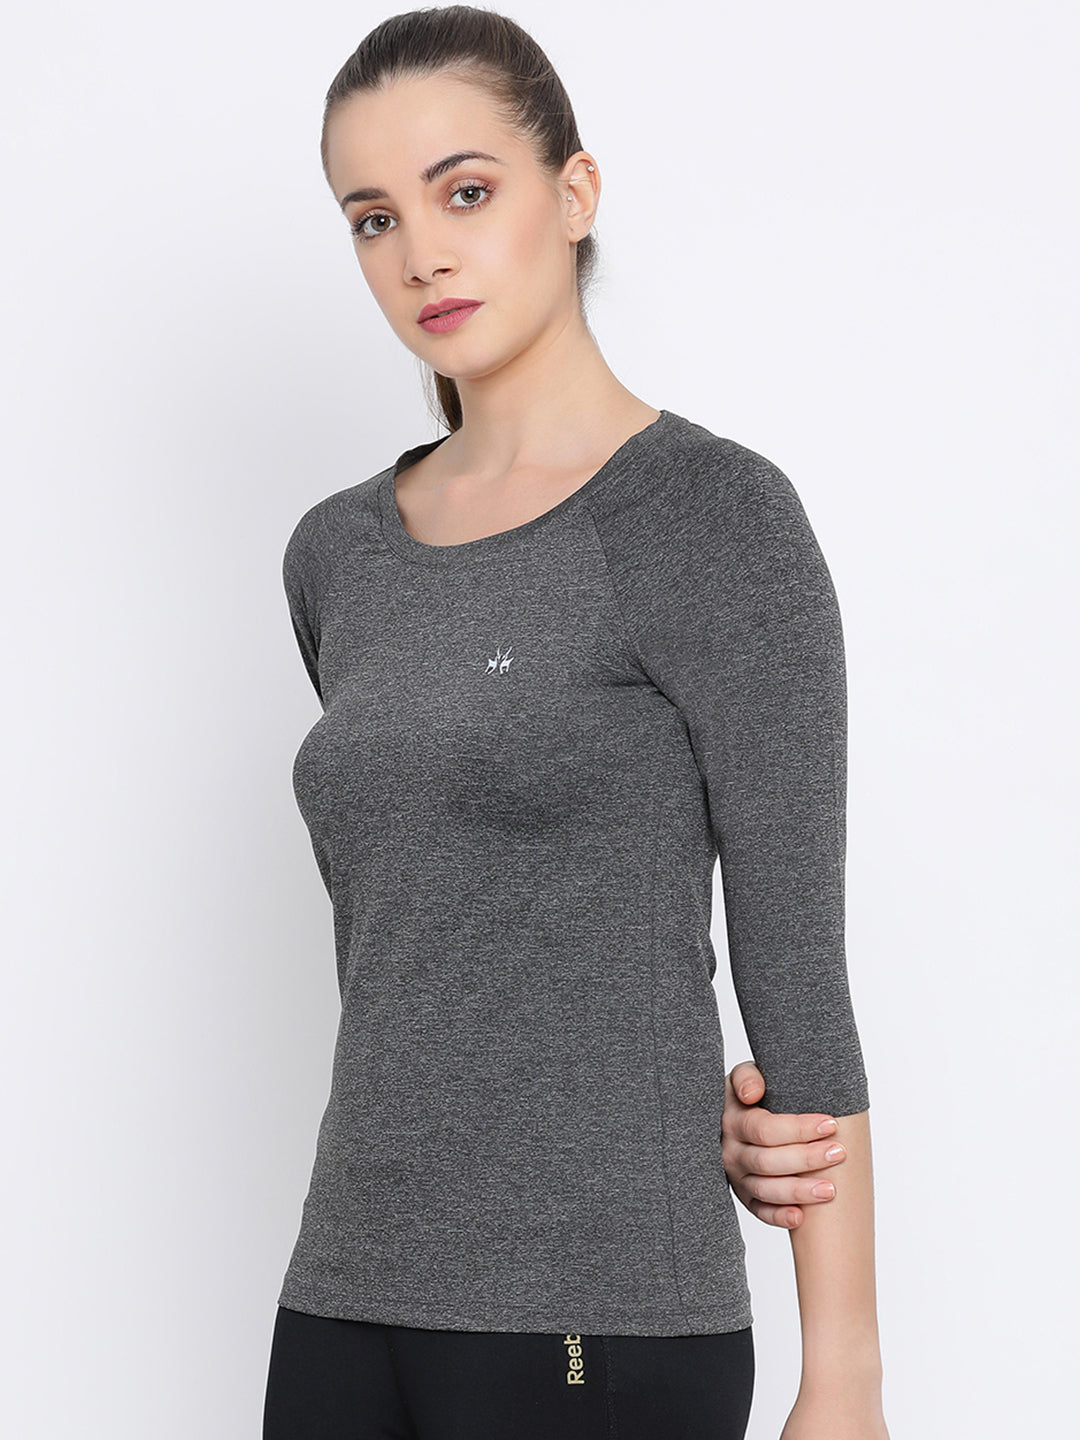 Grey Solid T-Shirt-Women T-Shirts-Crimsoune Club